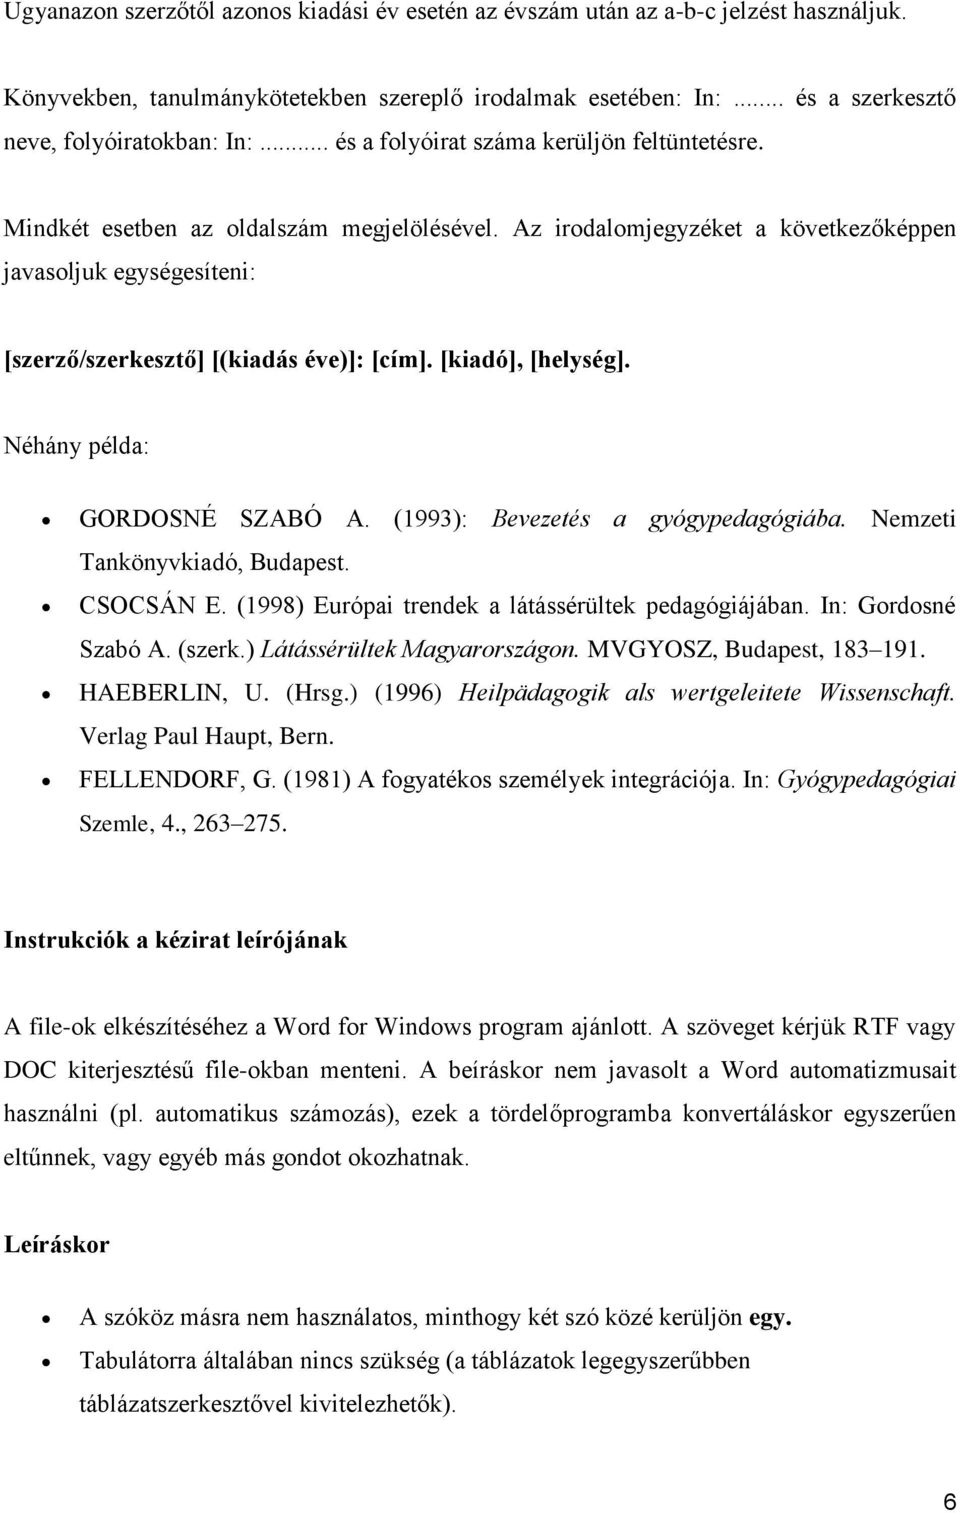 [kiadó], [helység]. Néhány példa: GORDOSNÉ SZABÓ A. (1993): Bevezetés a gyógypedagógiába. Nemzeti Tankönyvkiadó, Budapest. CSOCSÁN E. (1998) Európai trendek a látássérültek pedagógiájában.